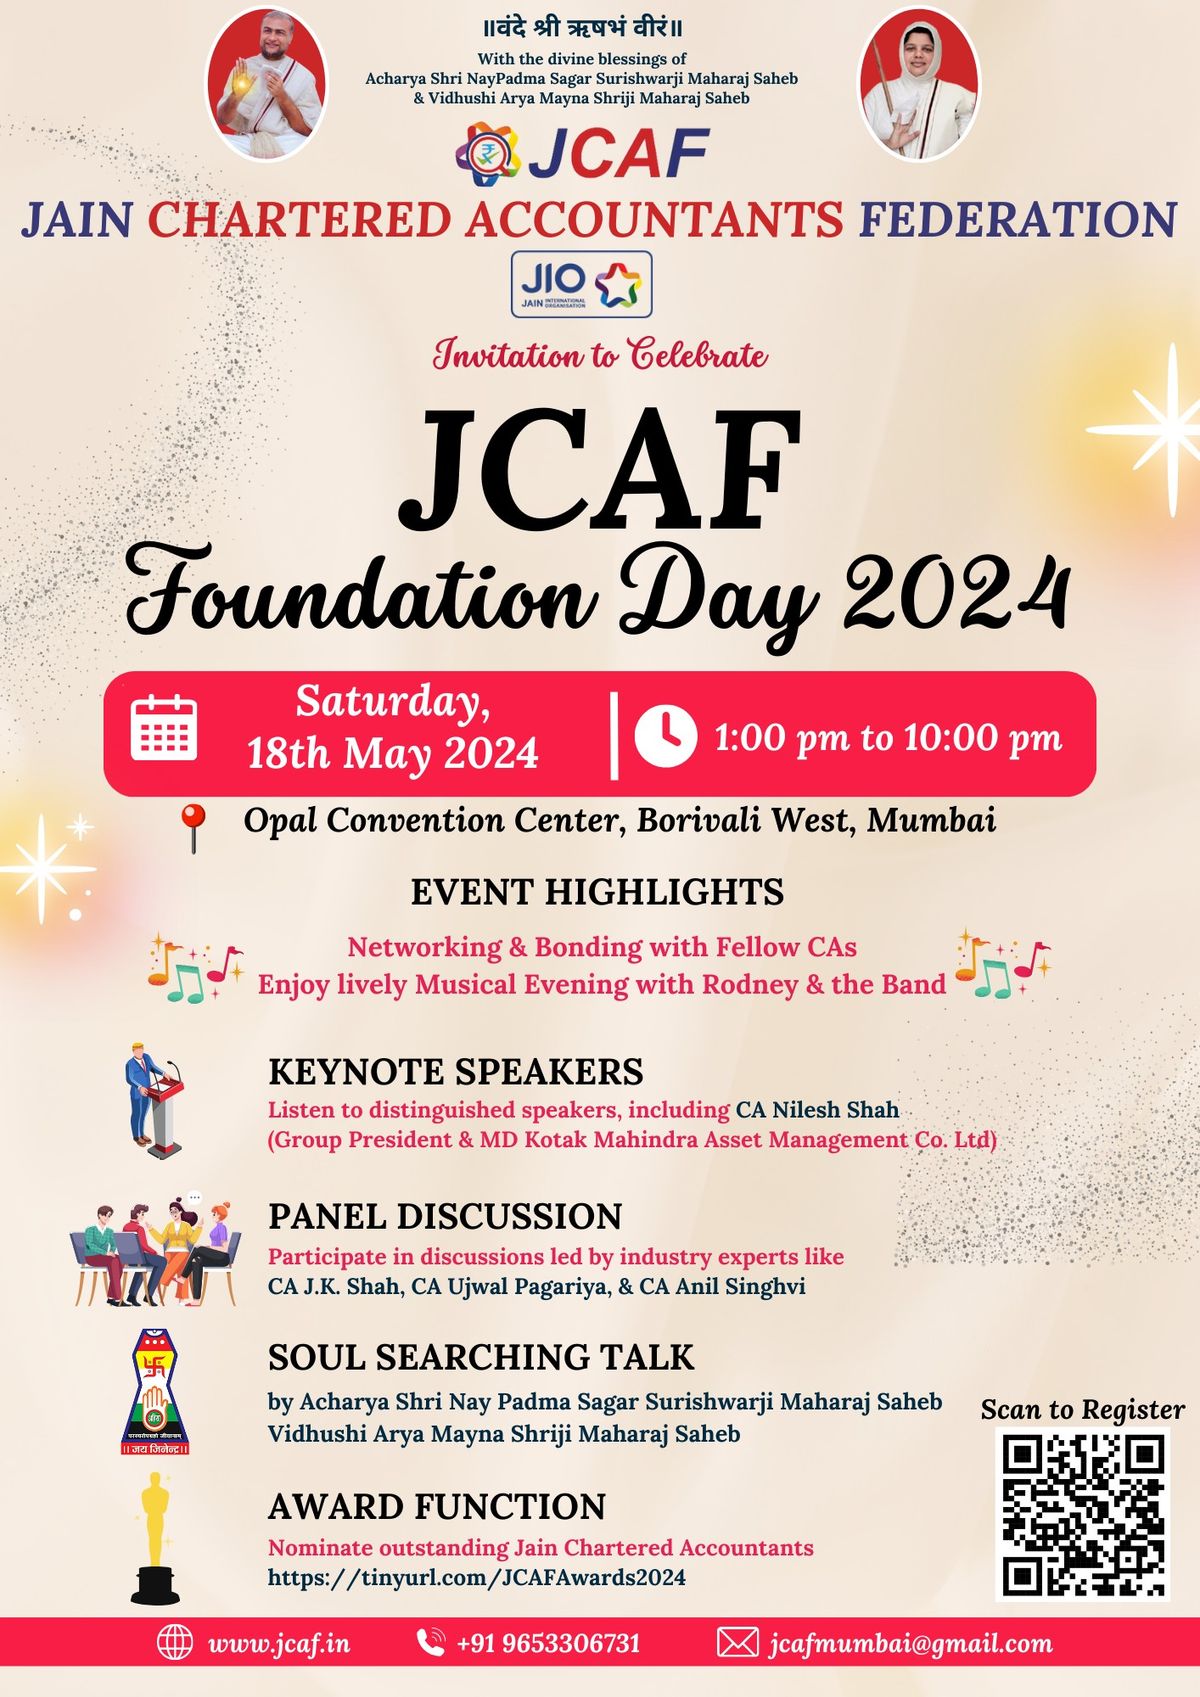 JCAF Foundation Day 2024